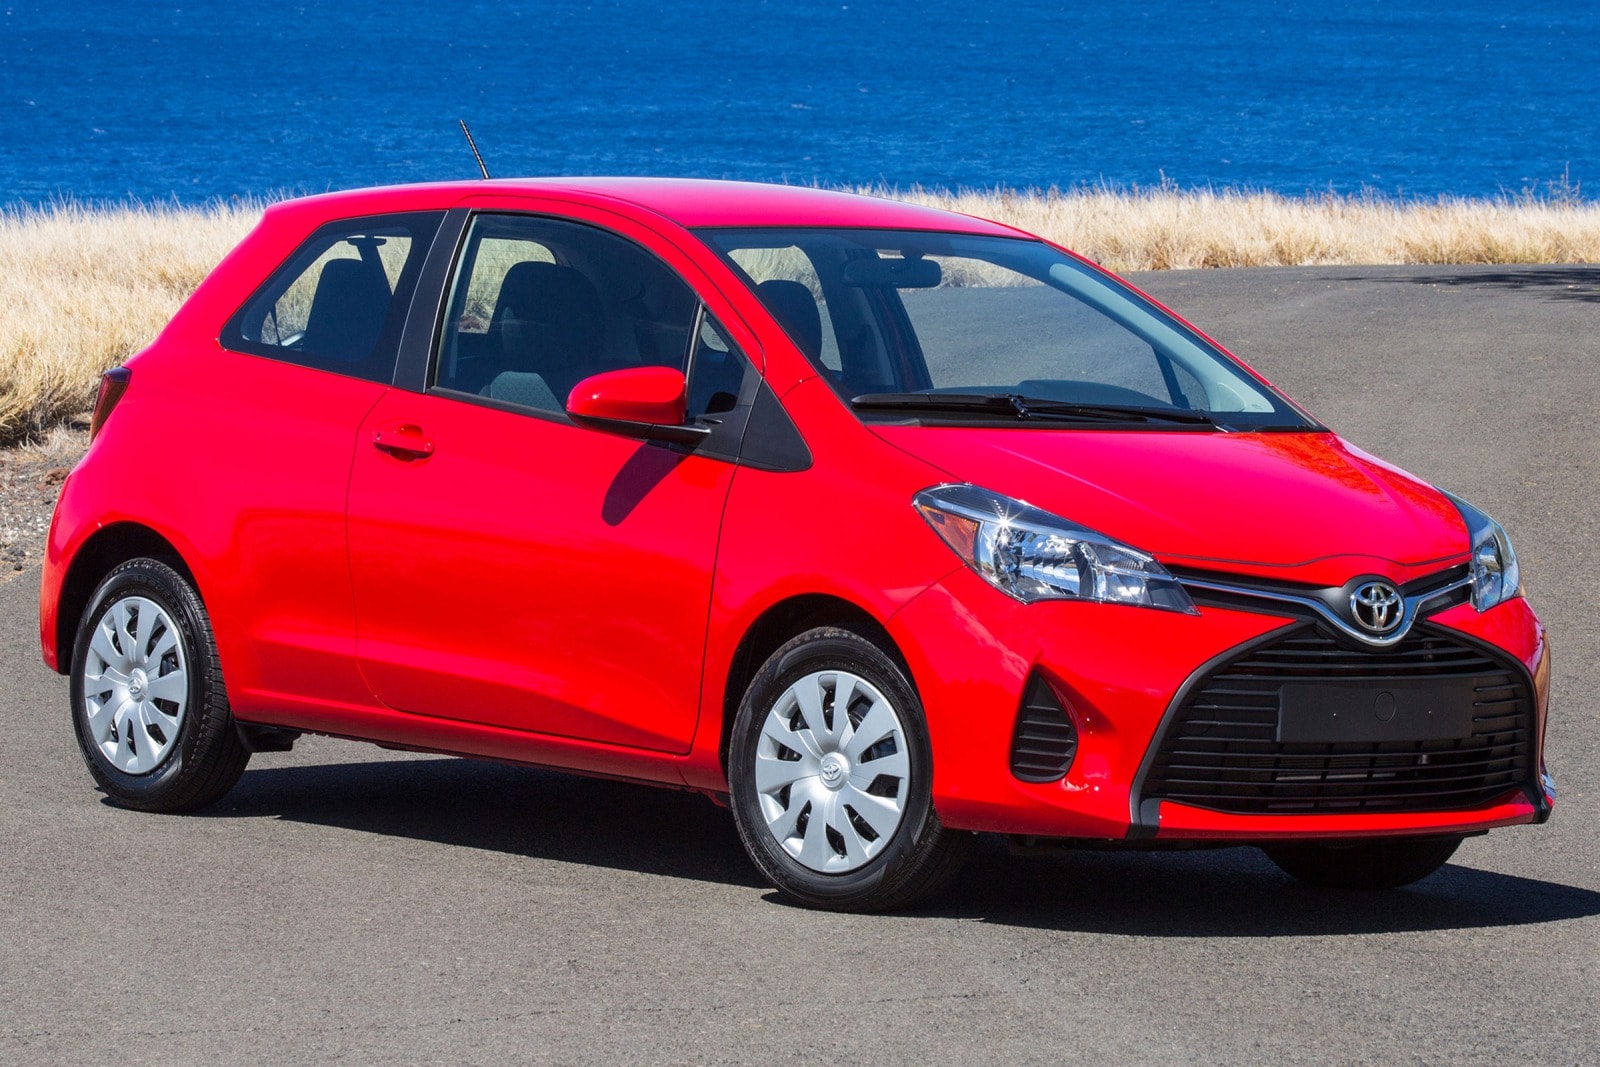 2015 Toyota Yaris Review & Ratings | Edmunds